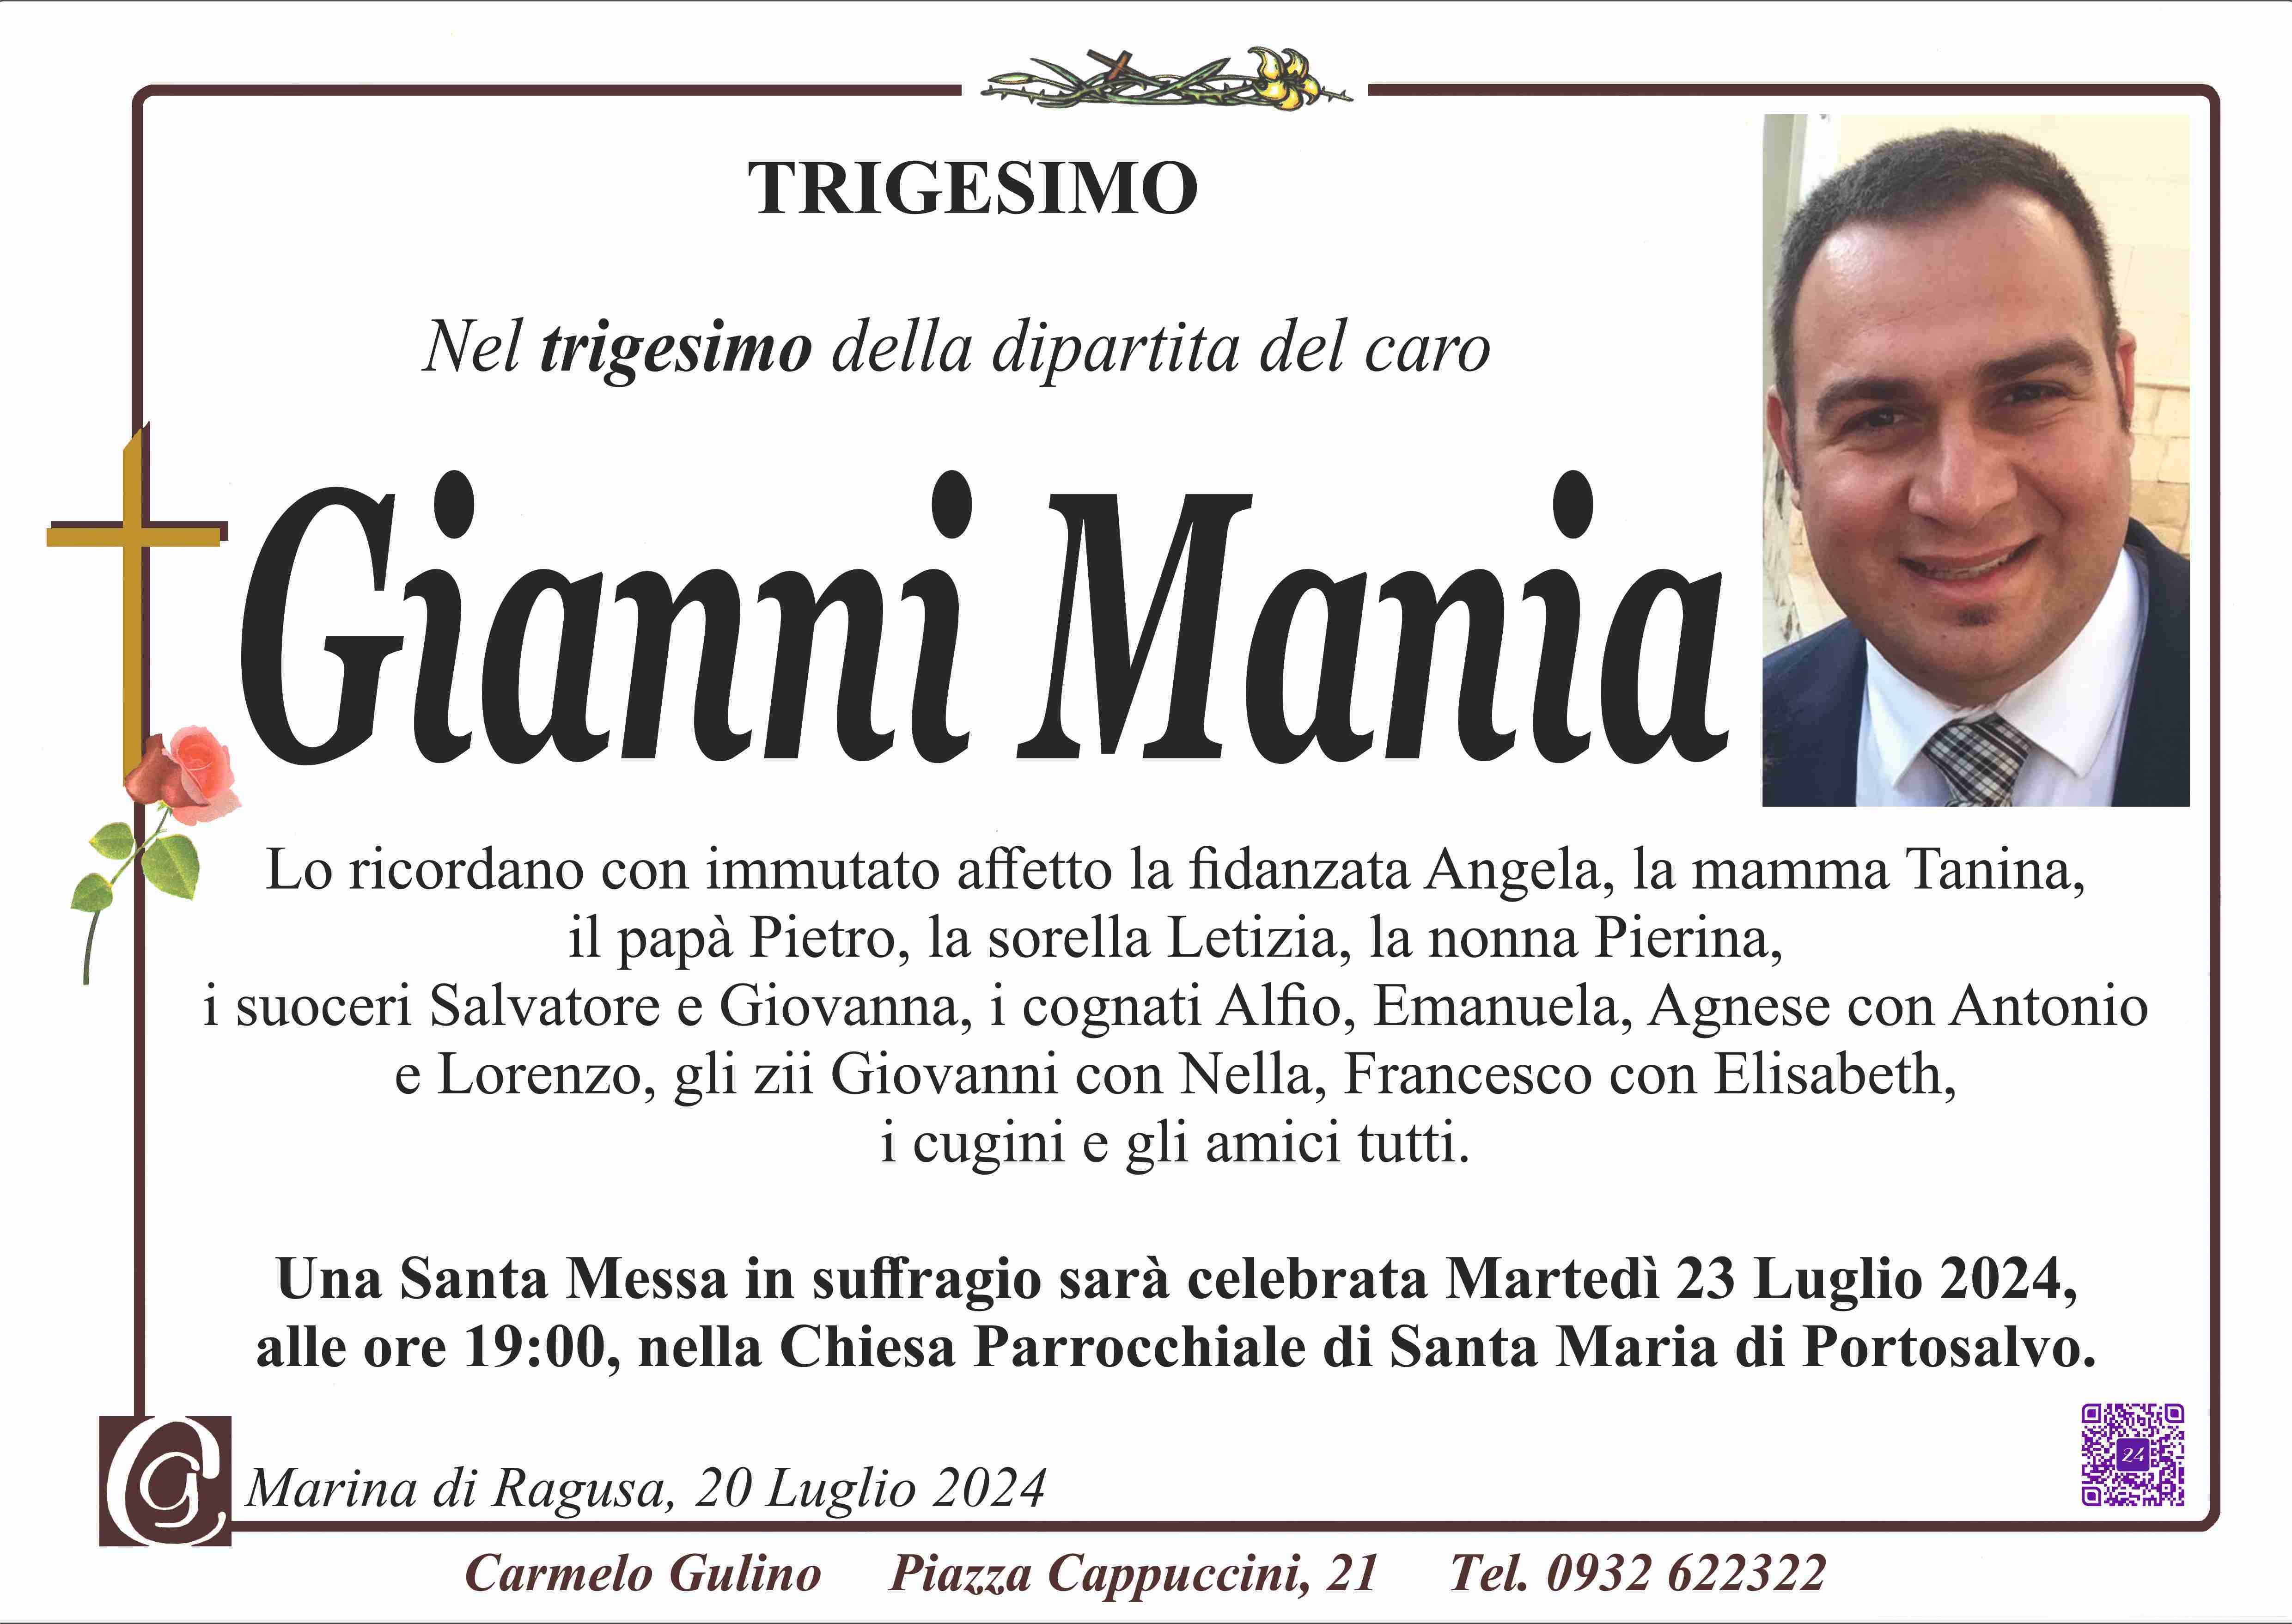 Gianni Mania